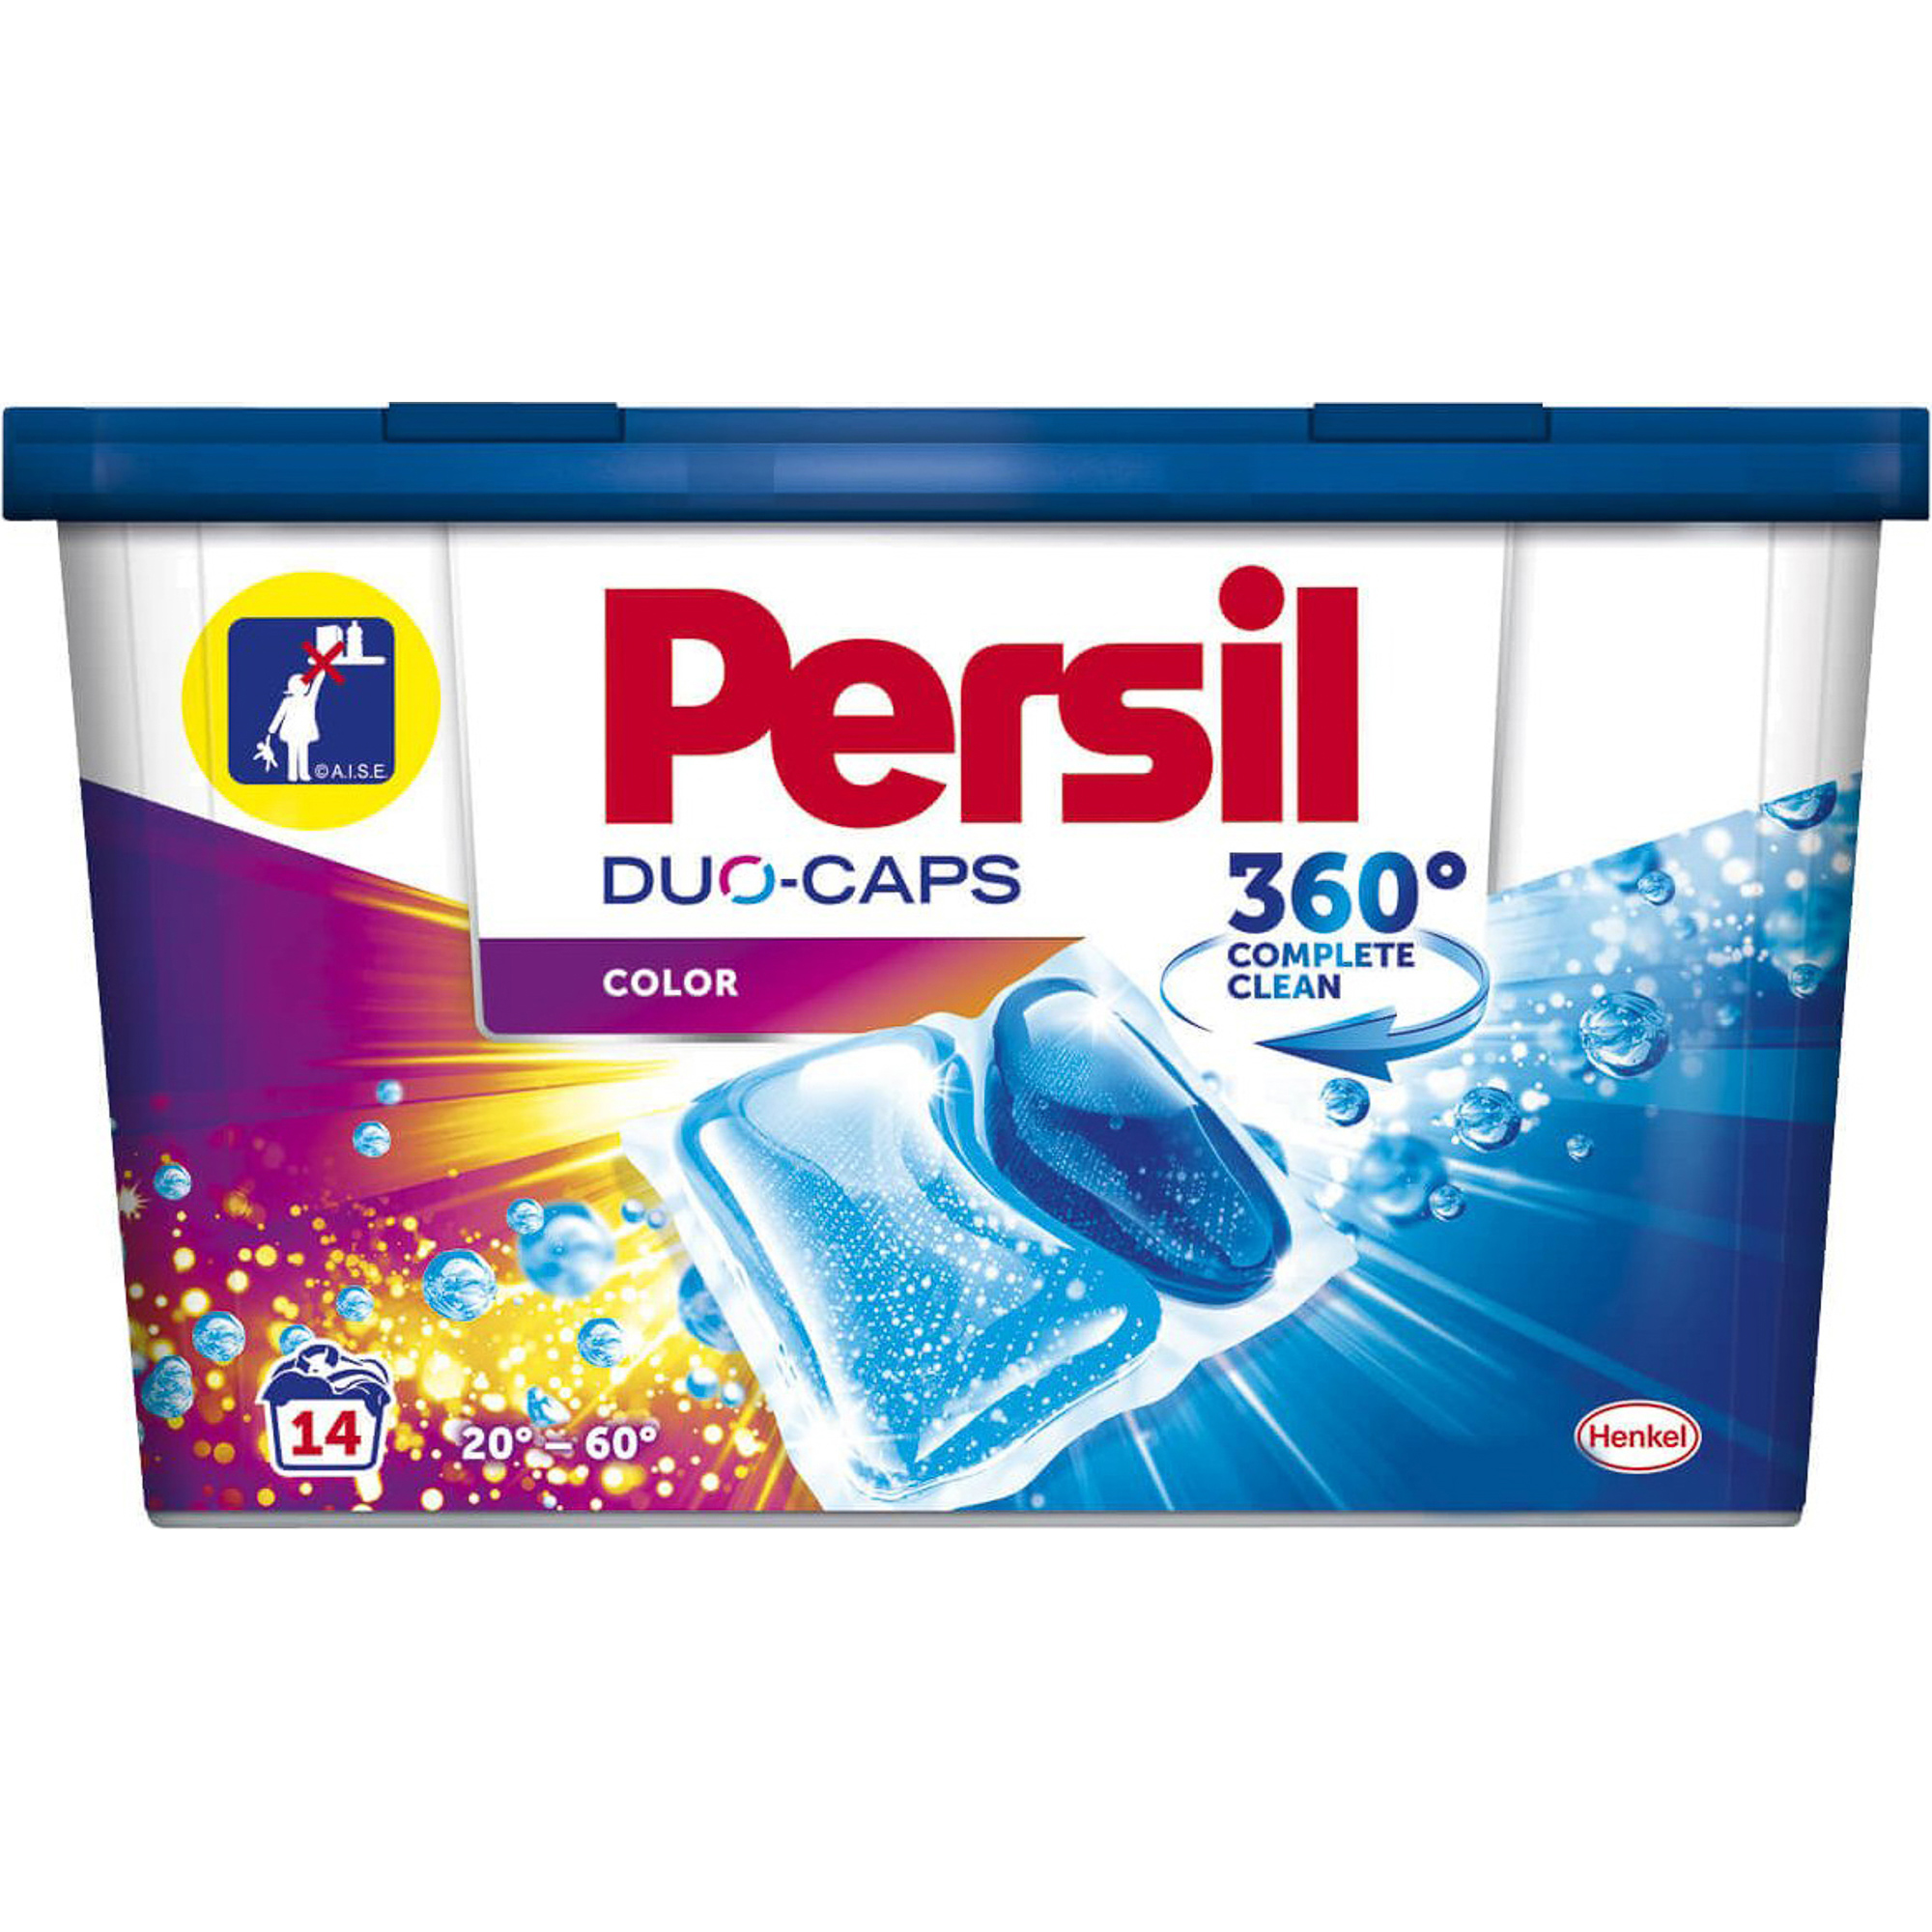 Капсулы для стирки Persil Duo-Caps Color 14 шт капсулы для стирки ariel pods всё в 1 color 30 шт